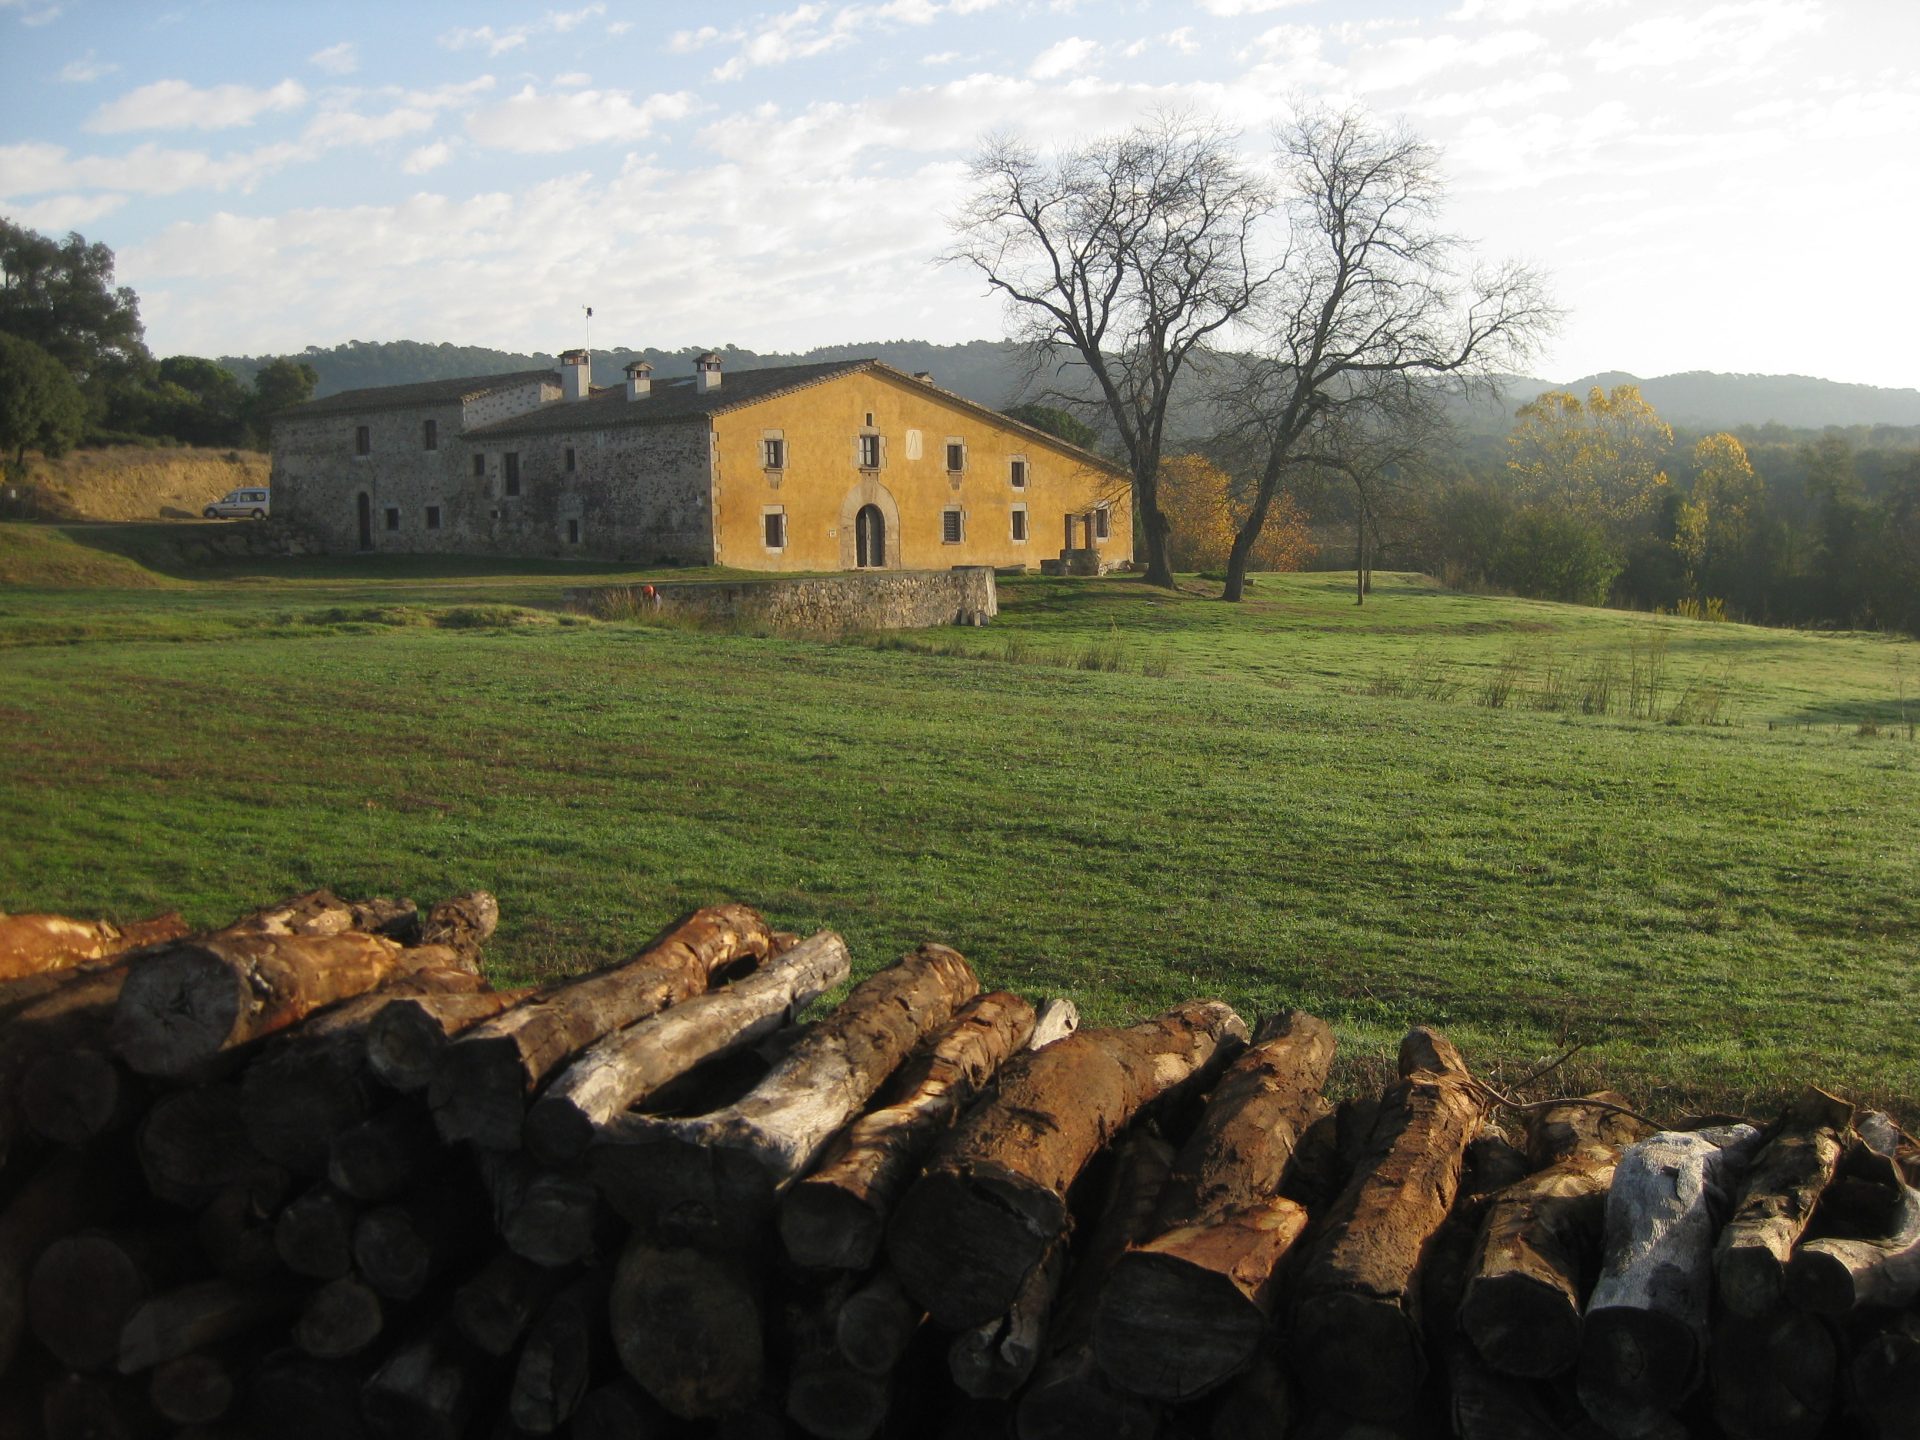 Al fons es veu la masia de Can Vilallonga, envoltada de prats i amb una filera de llenya a primer terme, testimoni de l'explotació forestal.